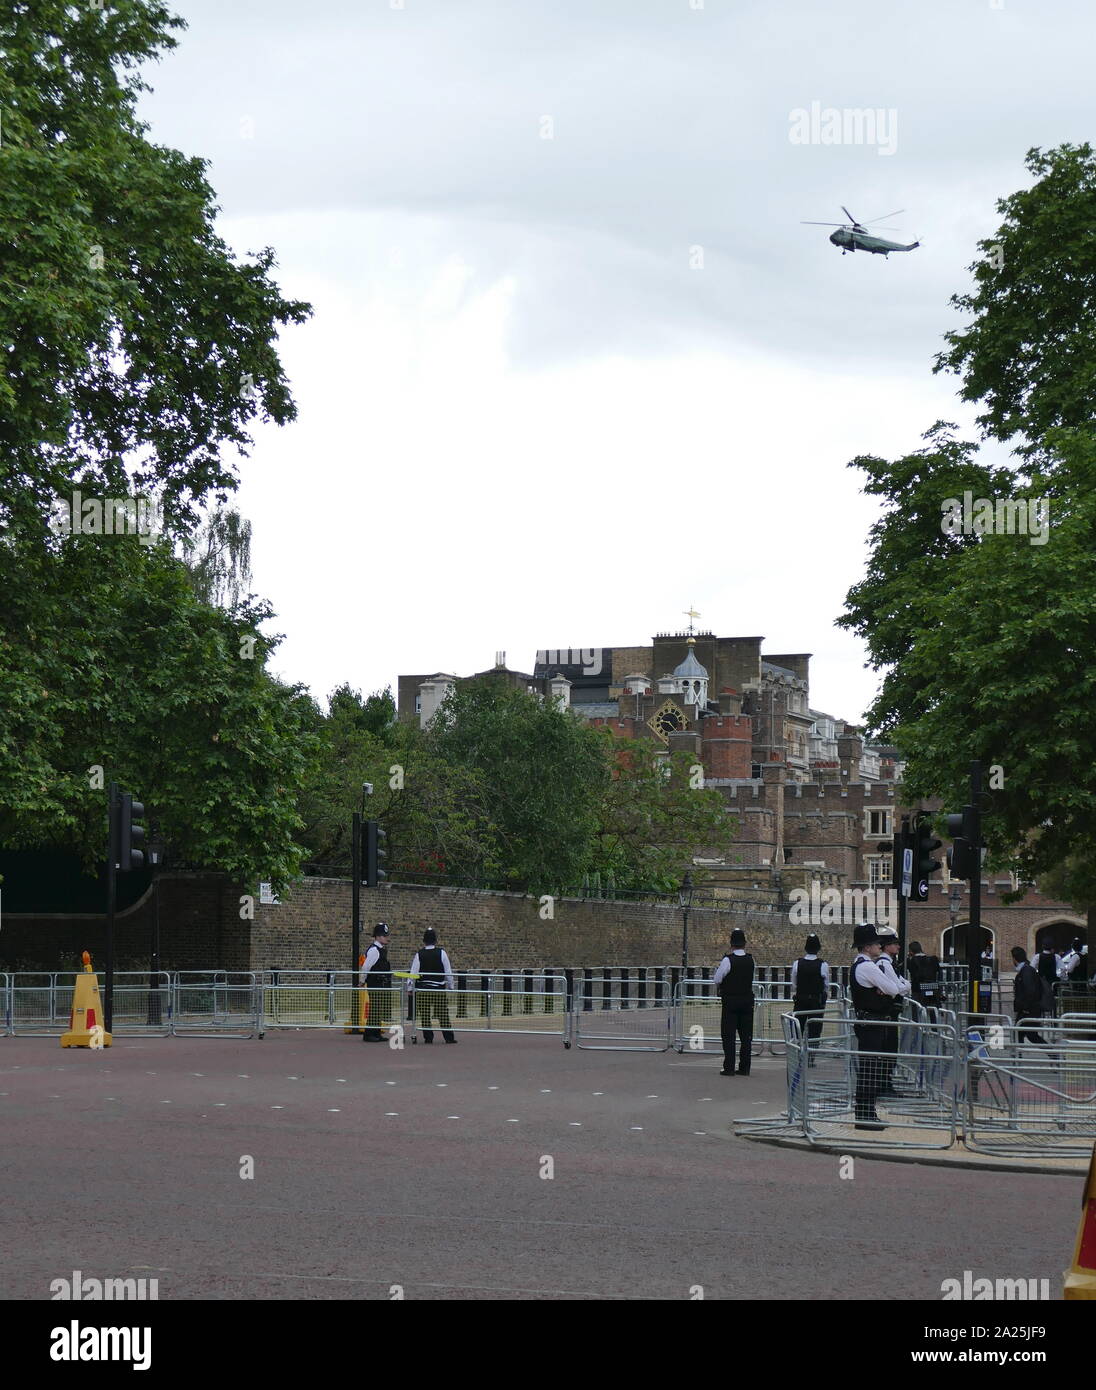 Un hélicoptère maritime transportant le Président Trump vole au-dessus sur le Mall, en route vers le palais de Buckingham, London, garantis par la police lors de la visite d'état pour le Président Donald Trump Juin 2019 Banque D'Images